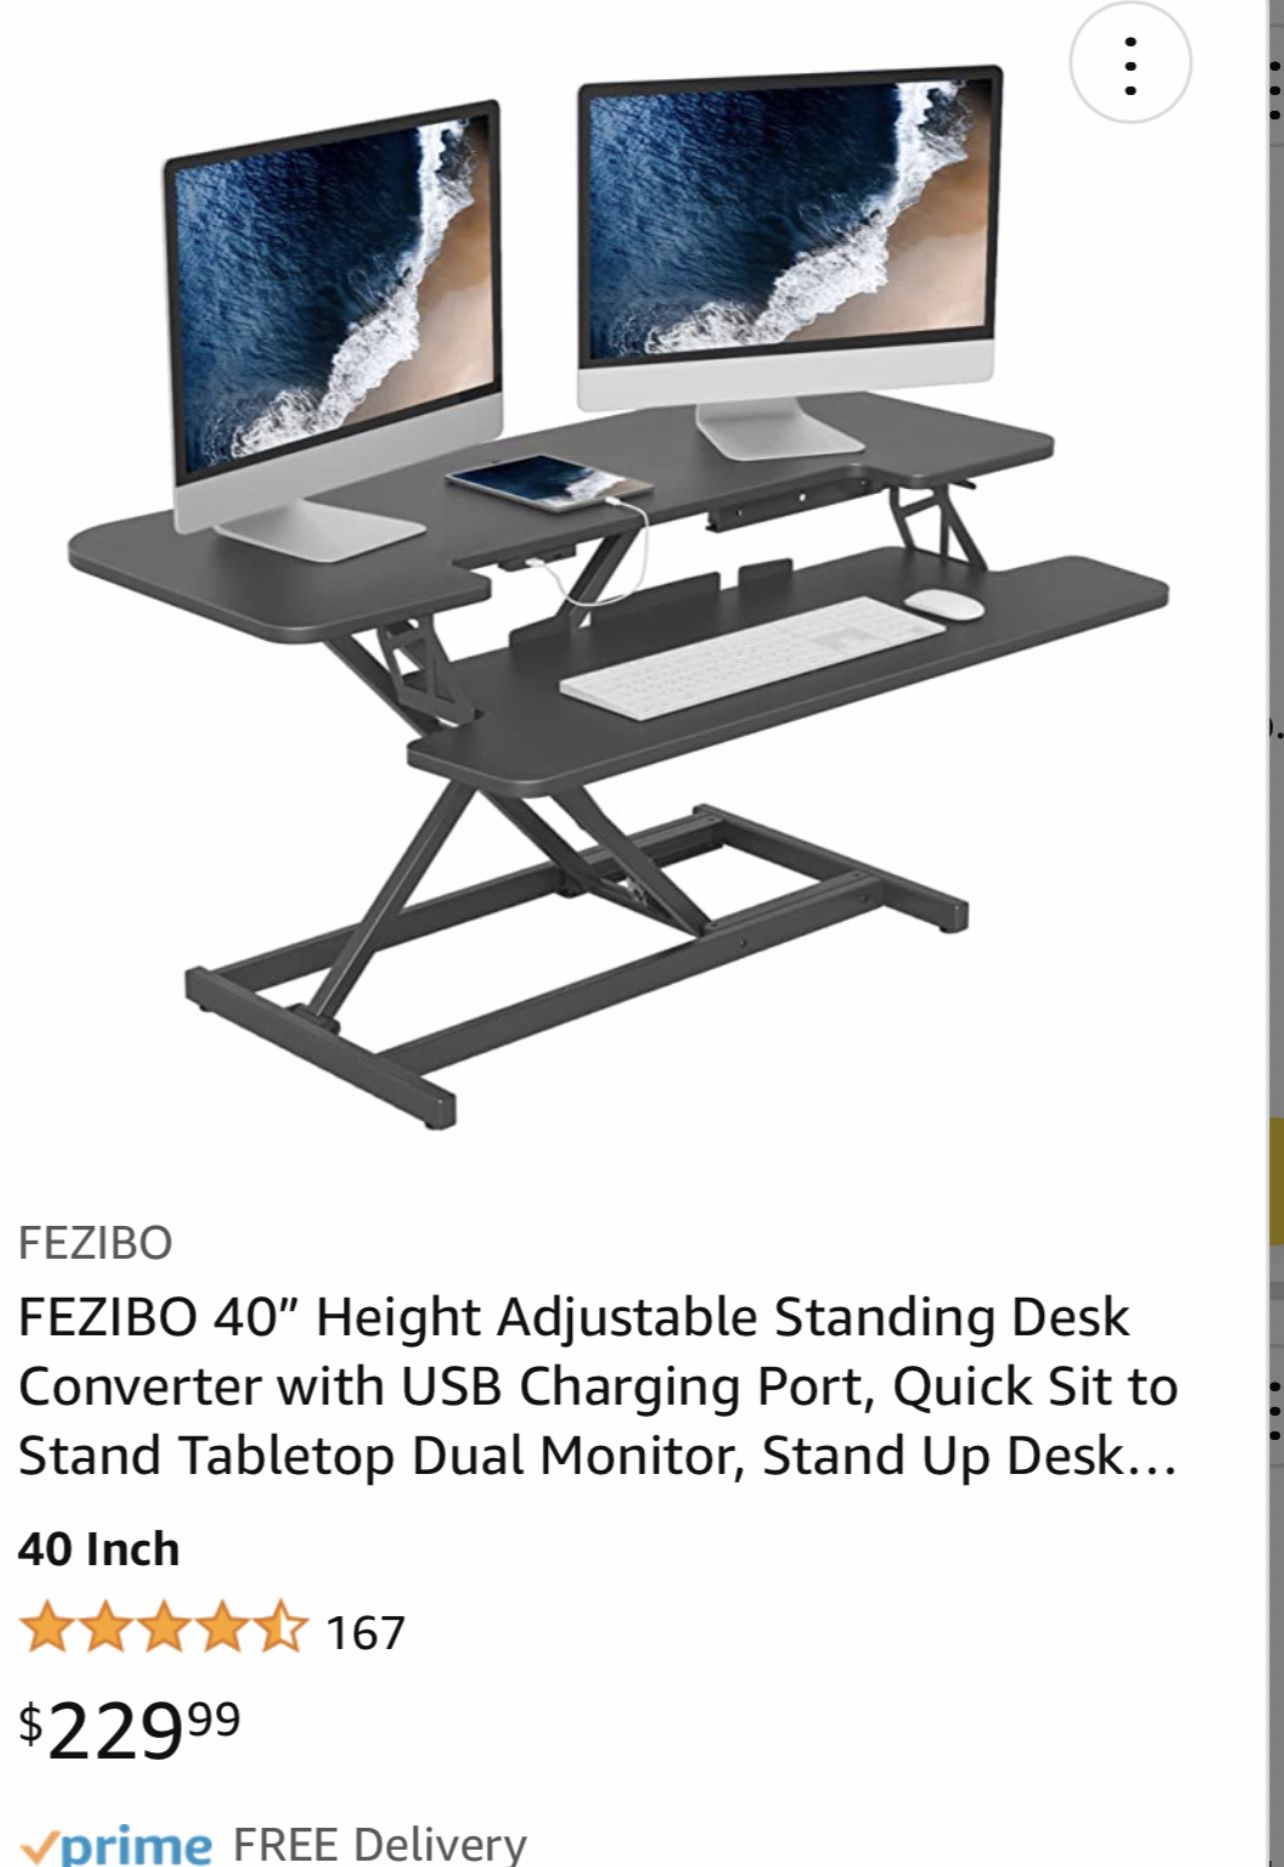 Adjustable Desk Works Great